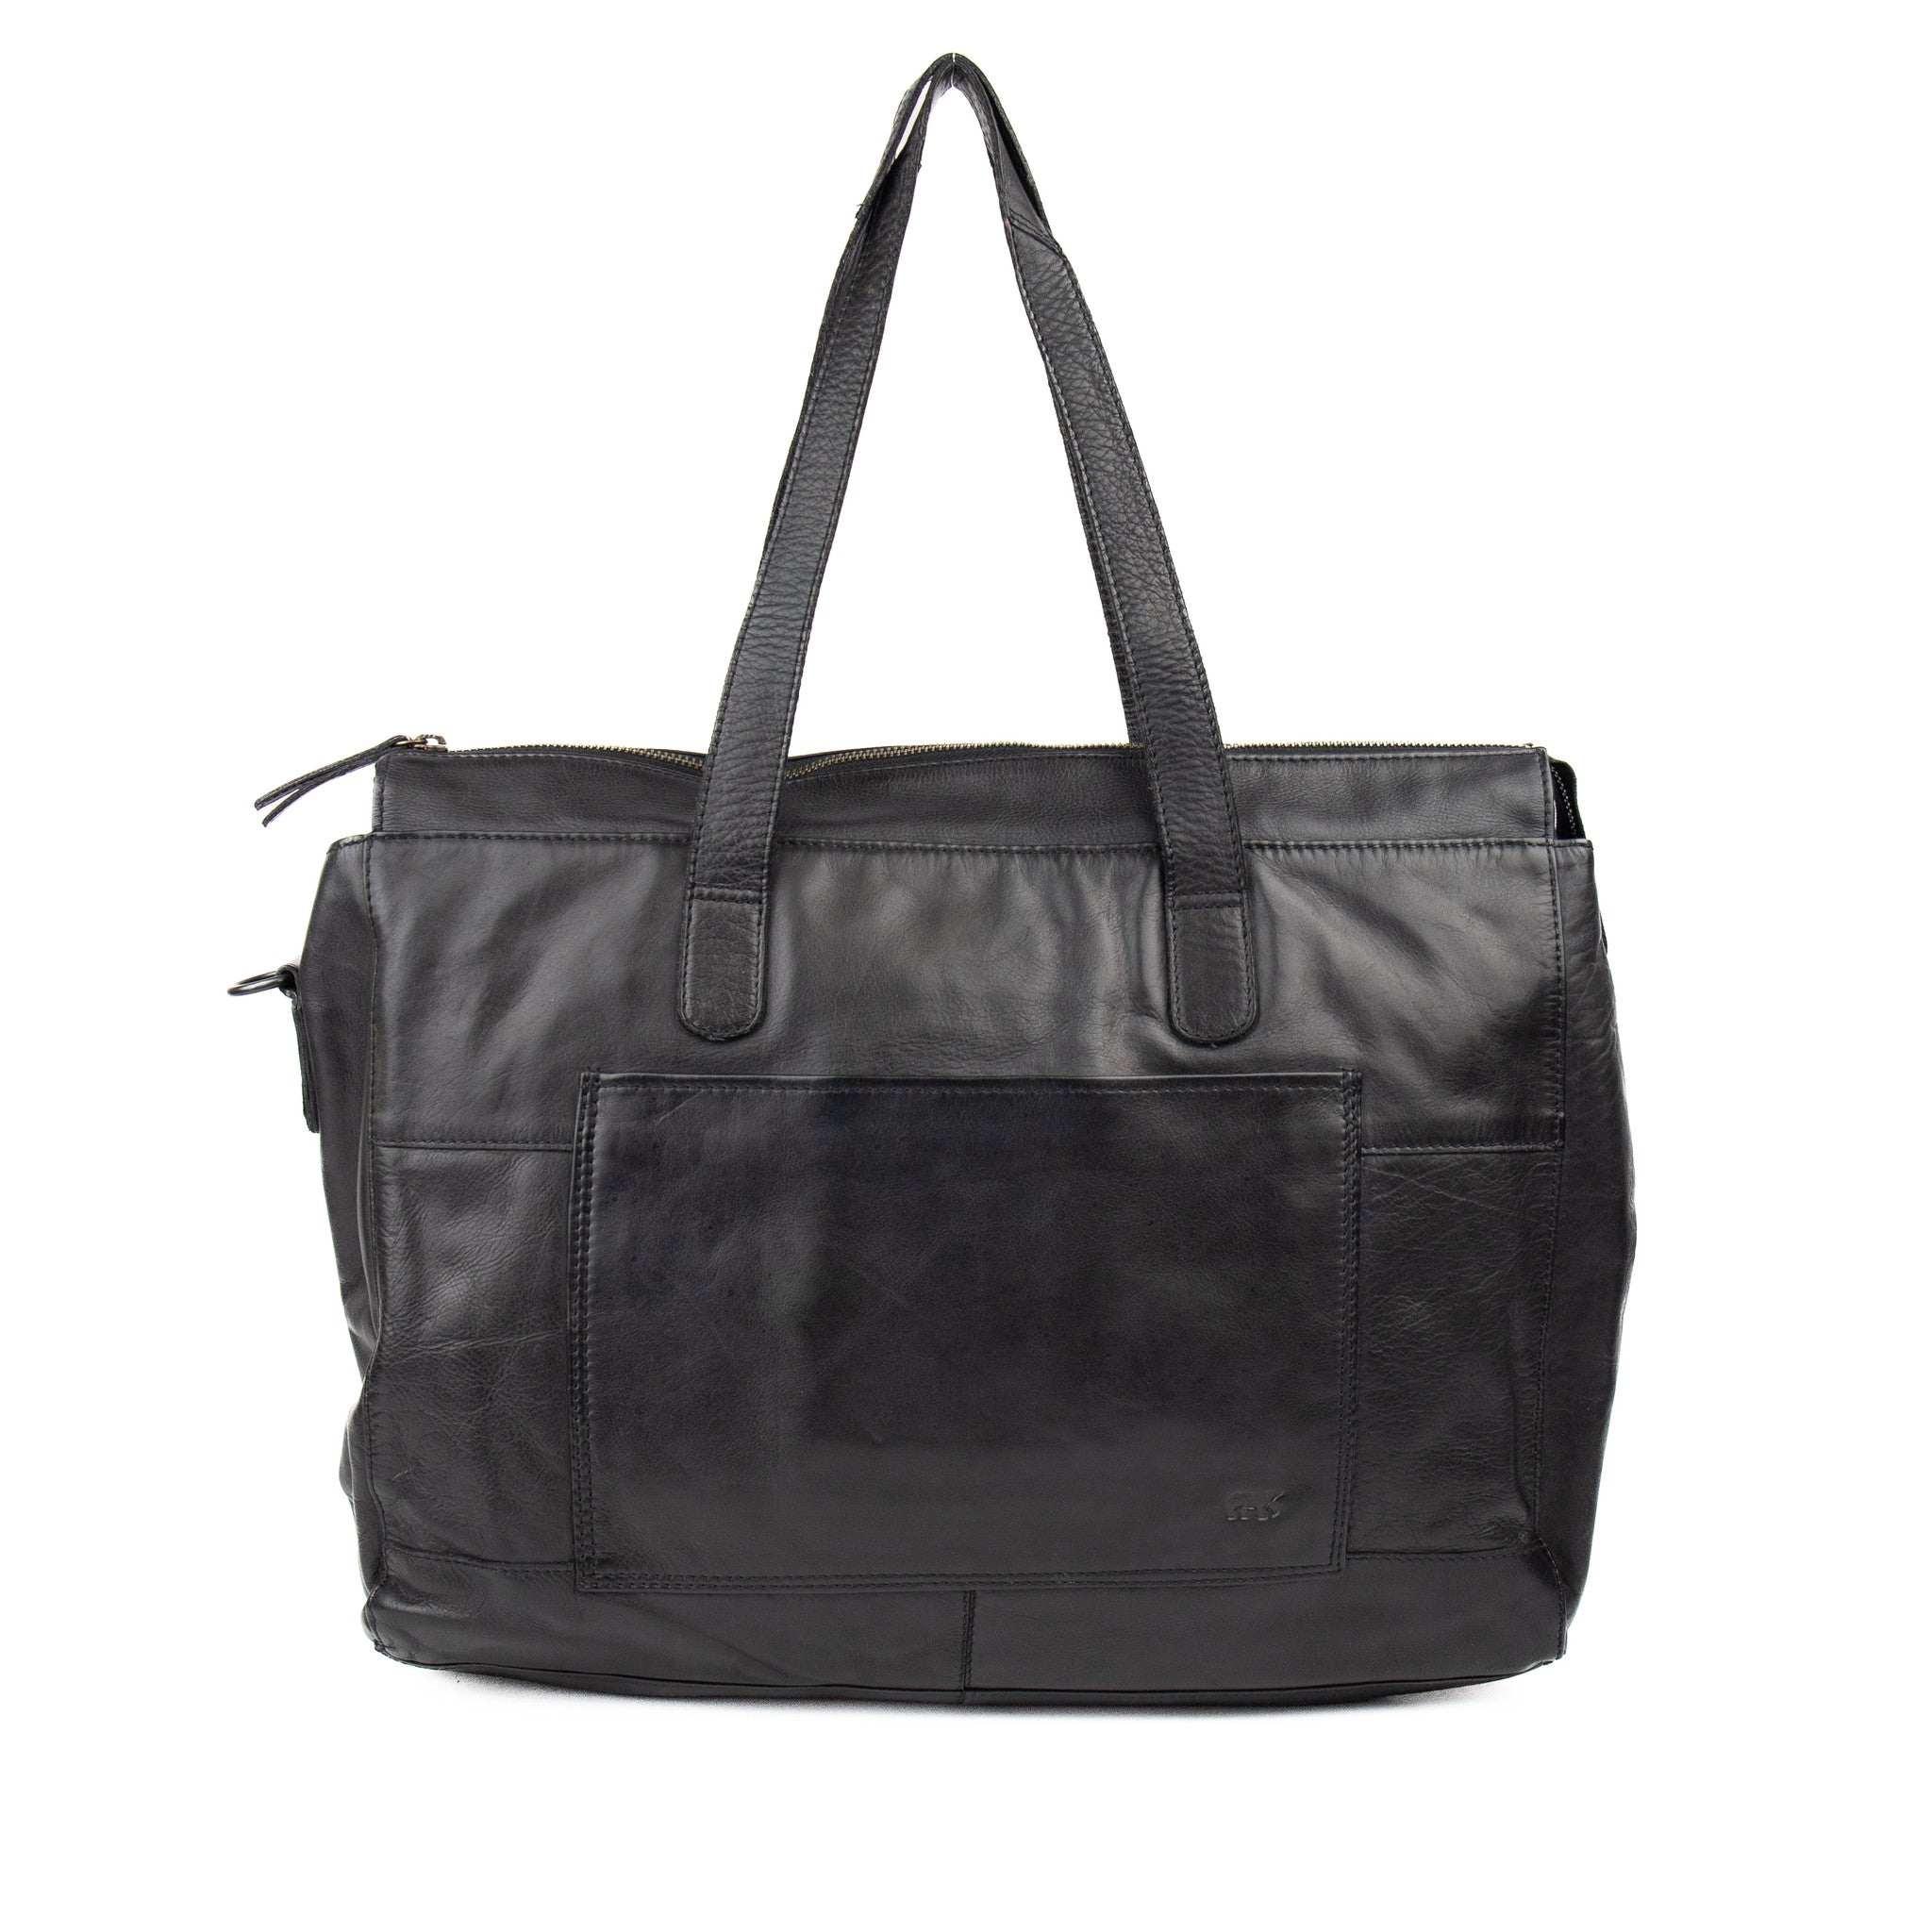 Laptop bag 'Sam' black - CL 42581